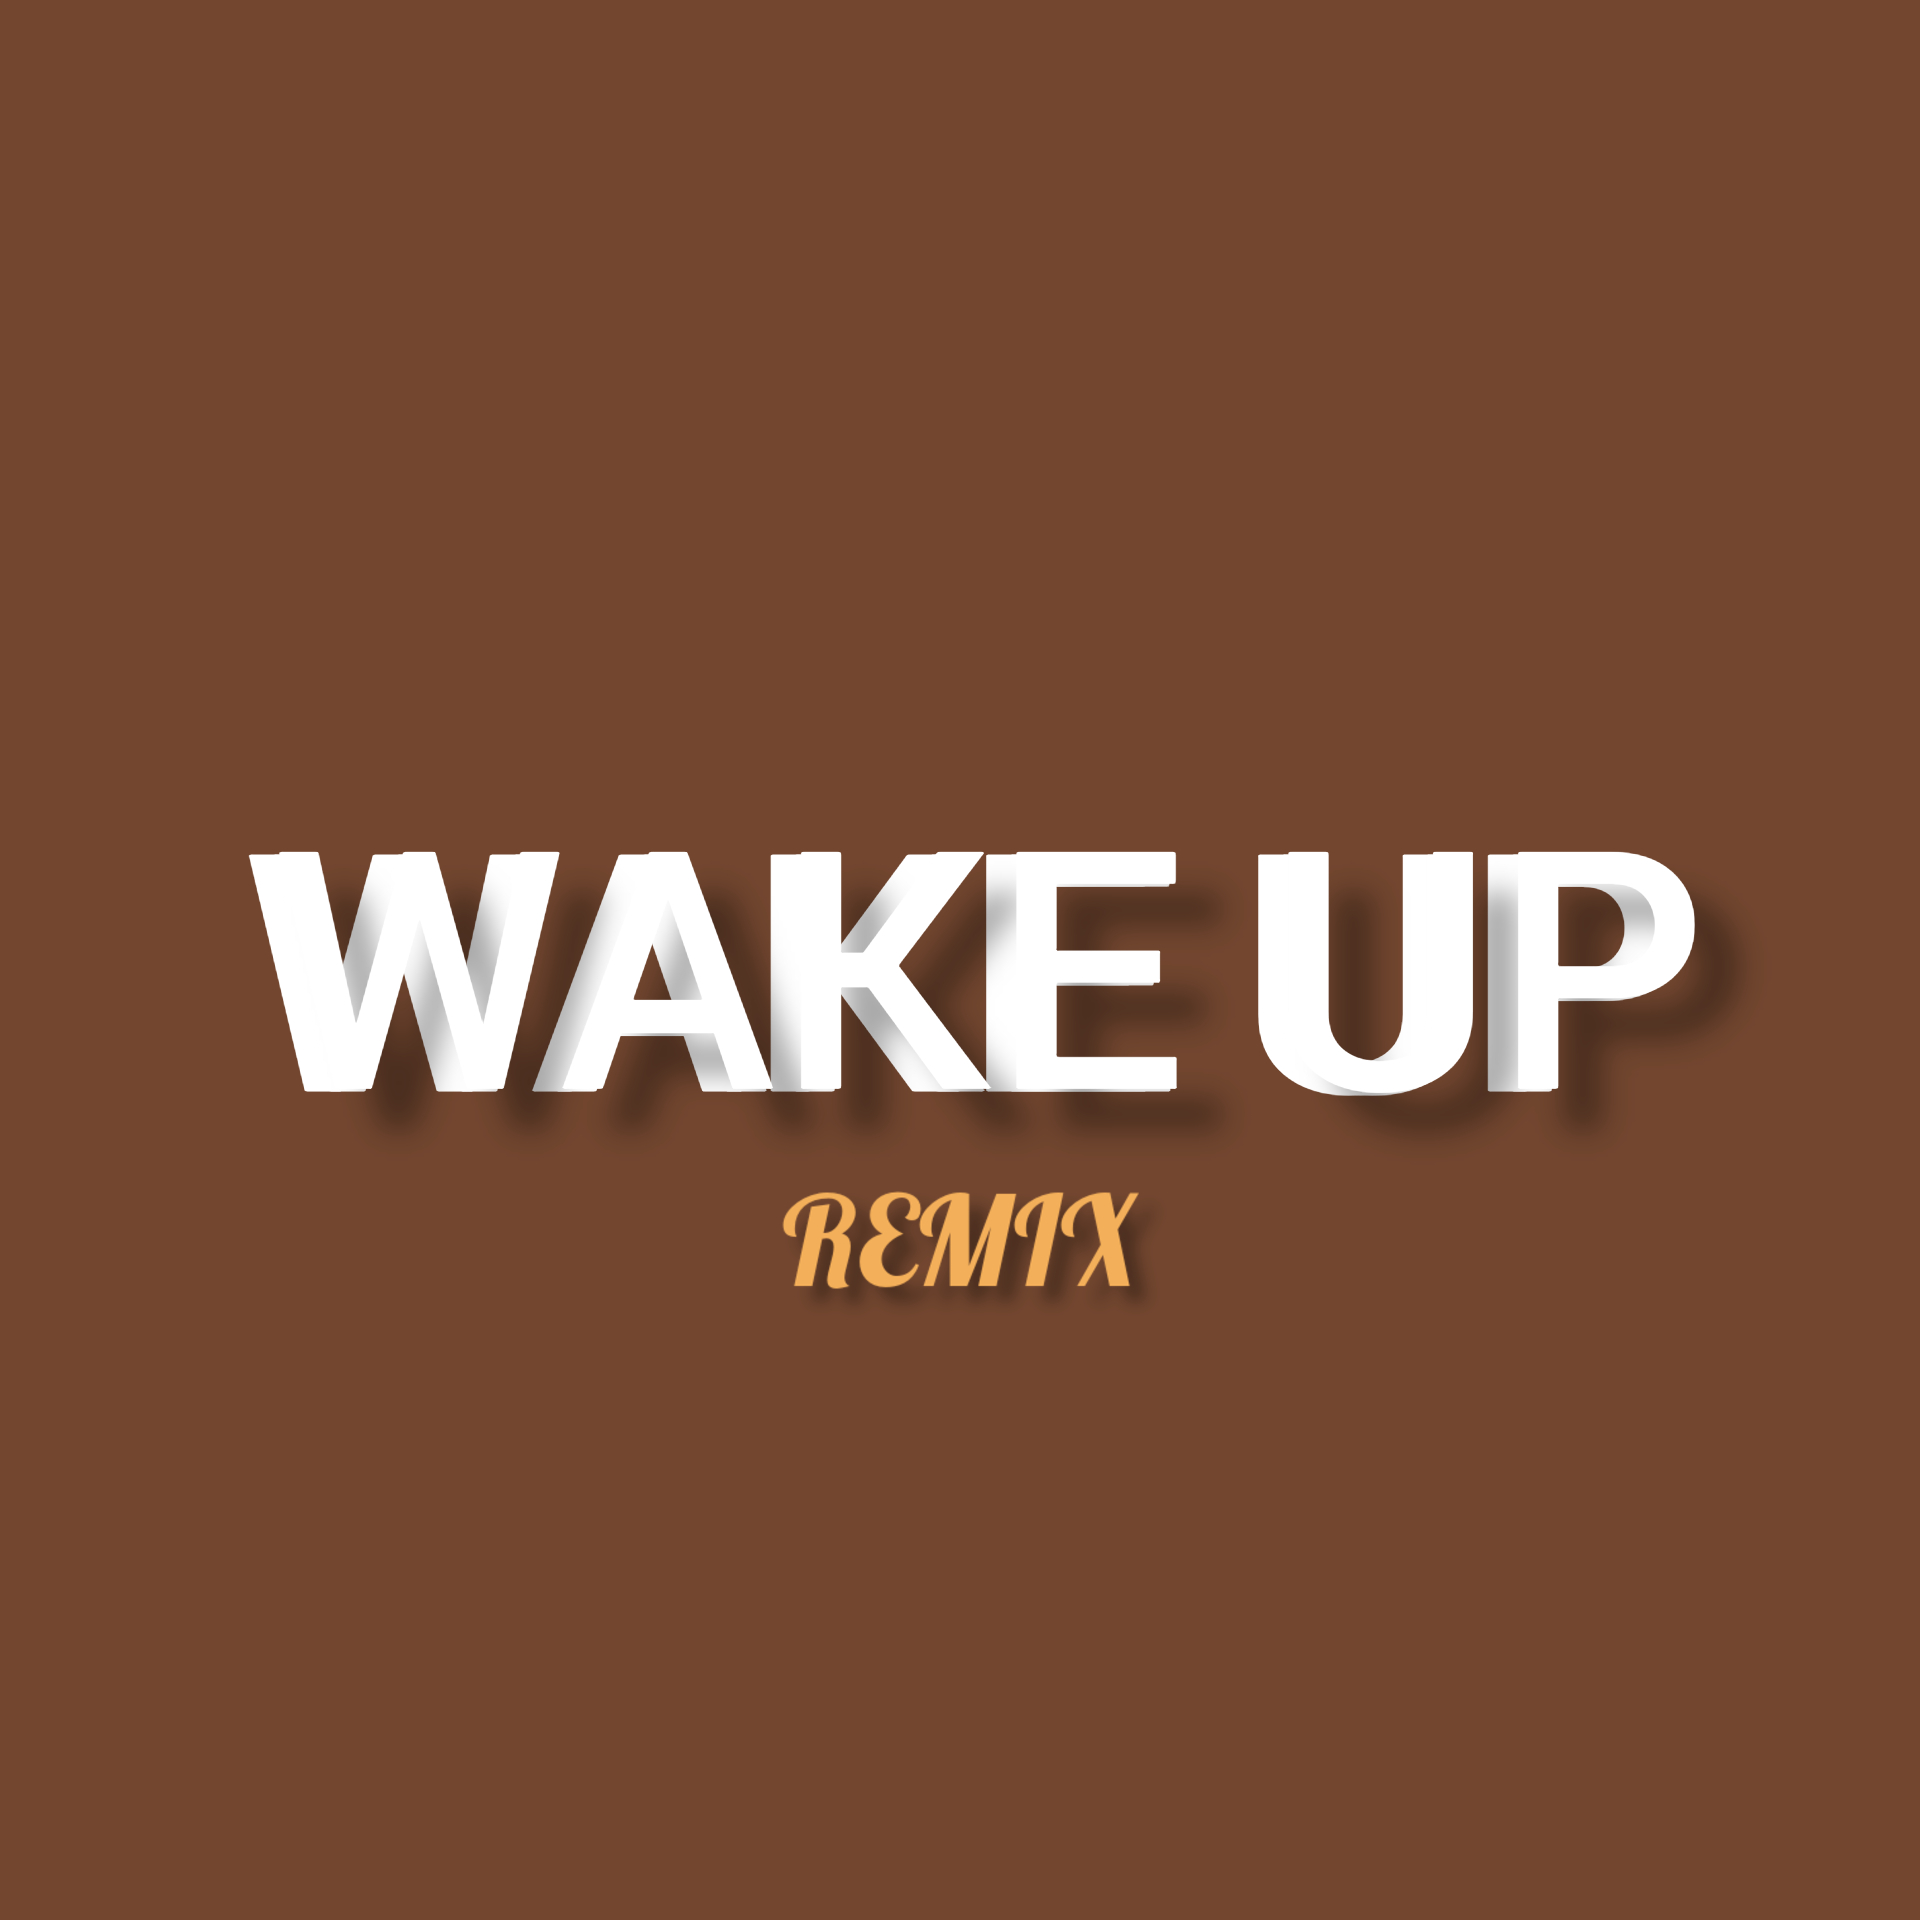  (Wake up, remix)